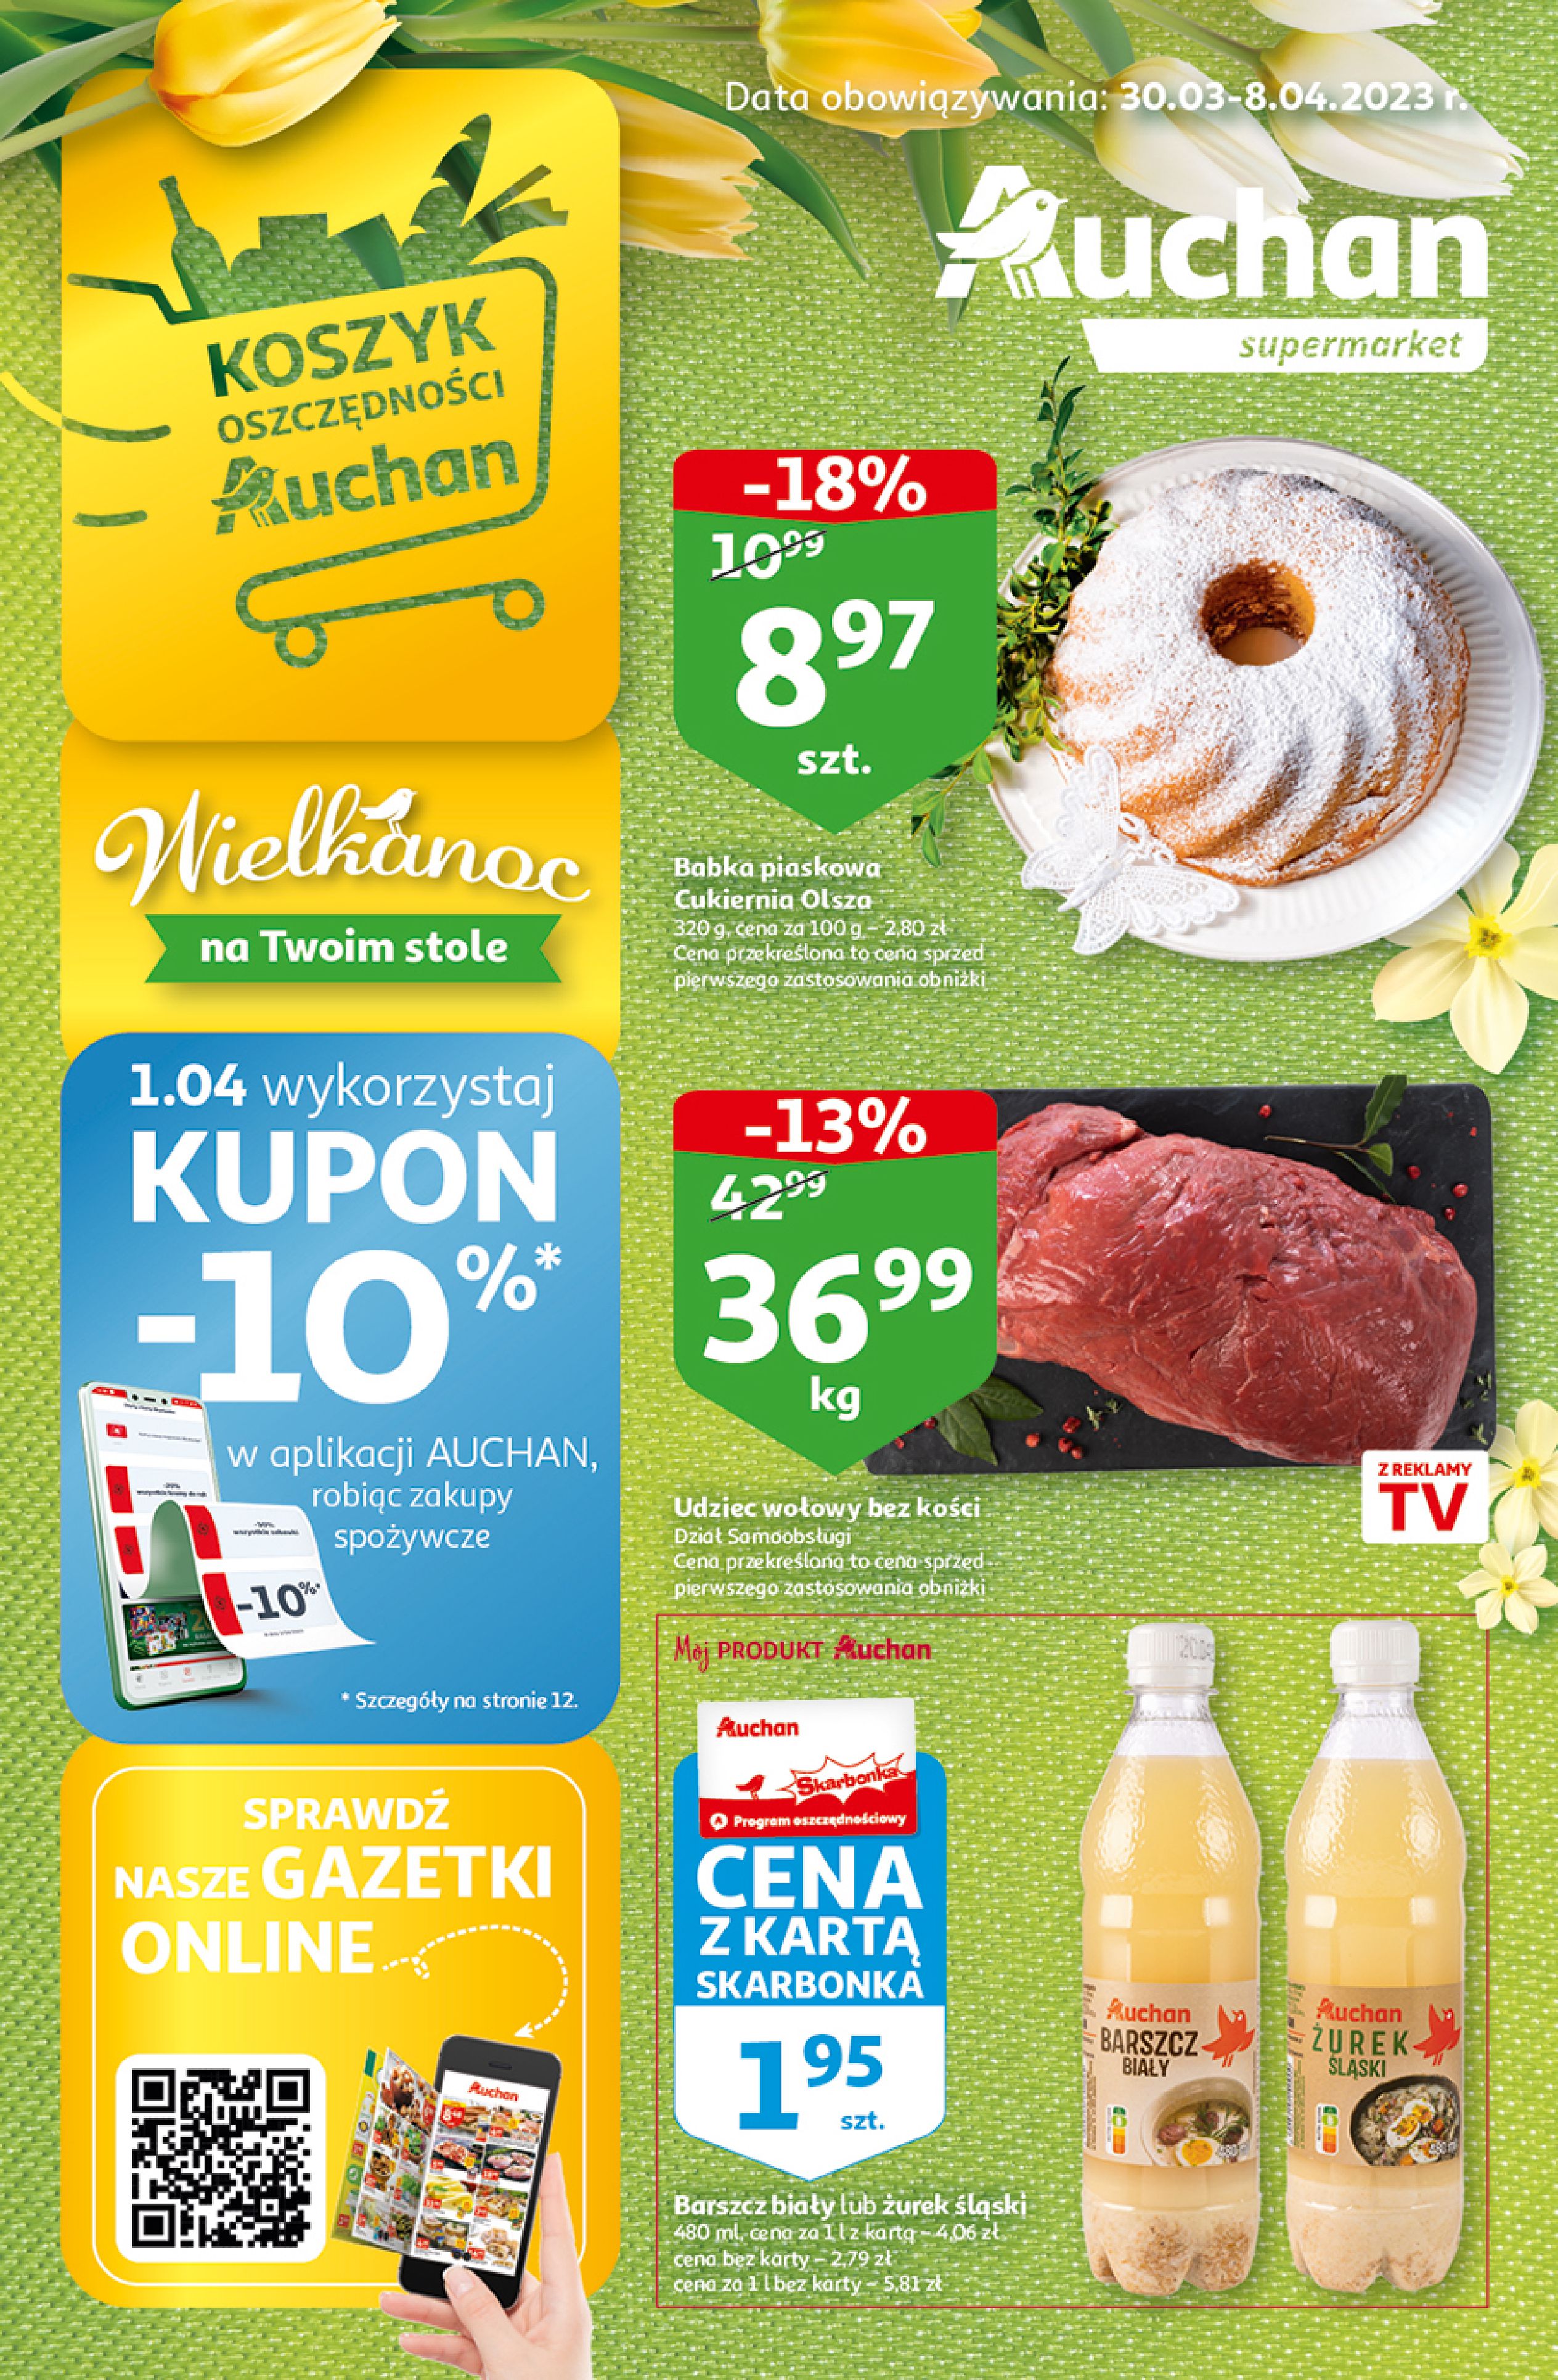 Auchan:  Gazetka Auchan supermarket do 8.04. 29.03.2023